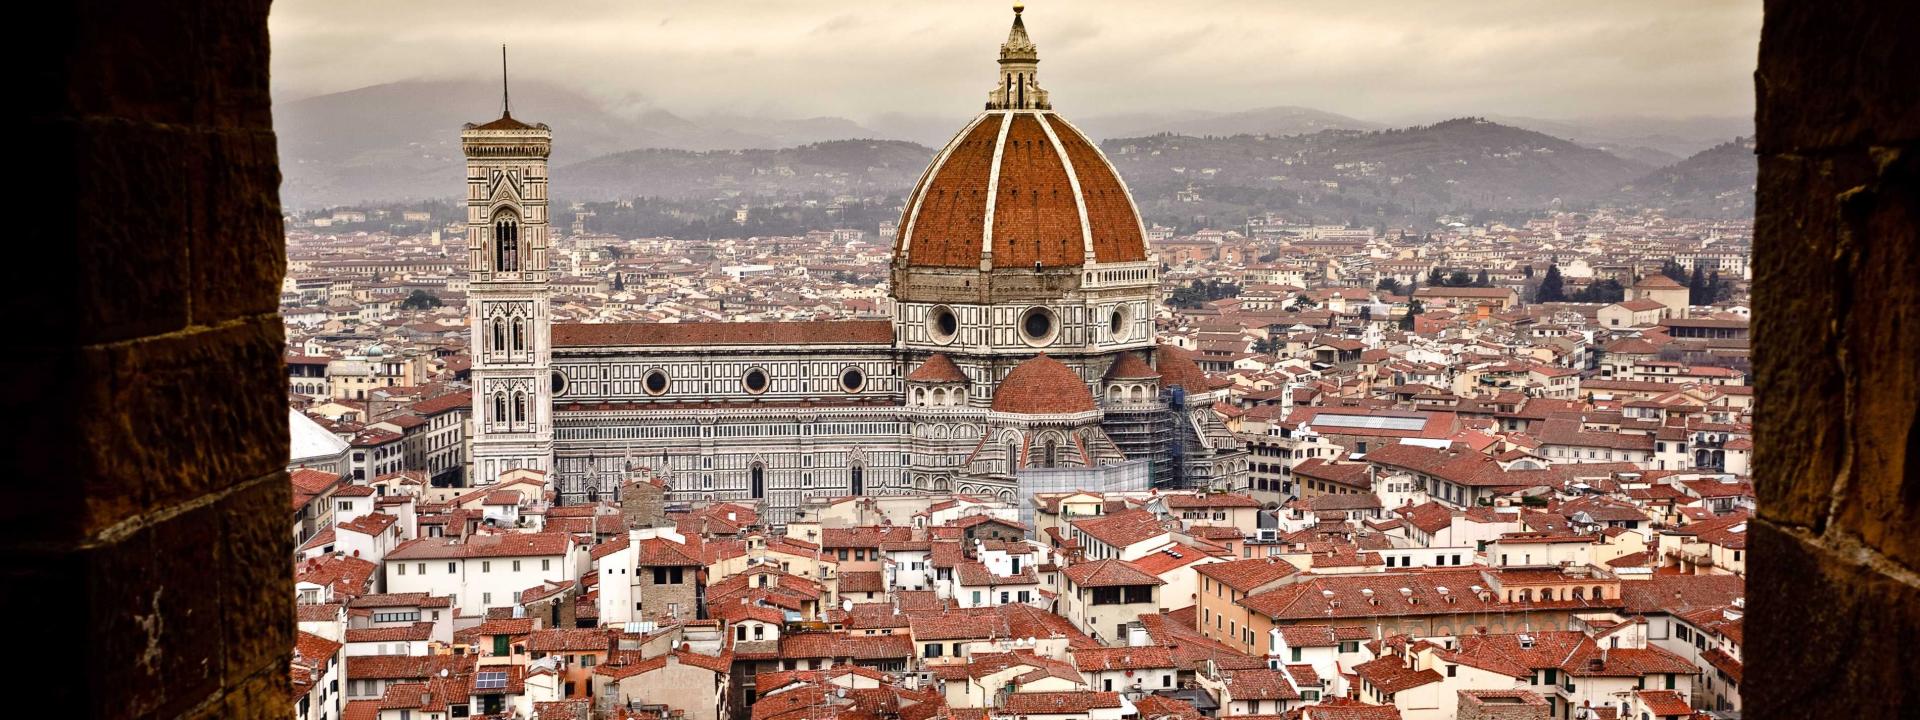 La città metropolitana di Firenze e i suoi ambiti turistici